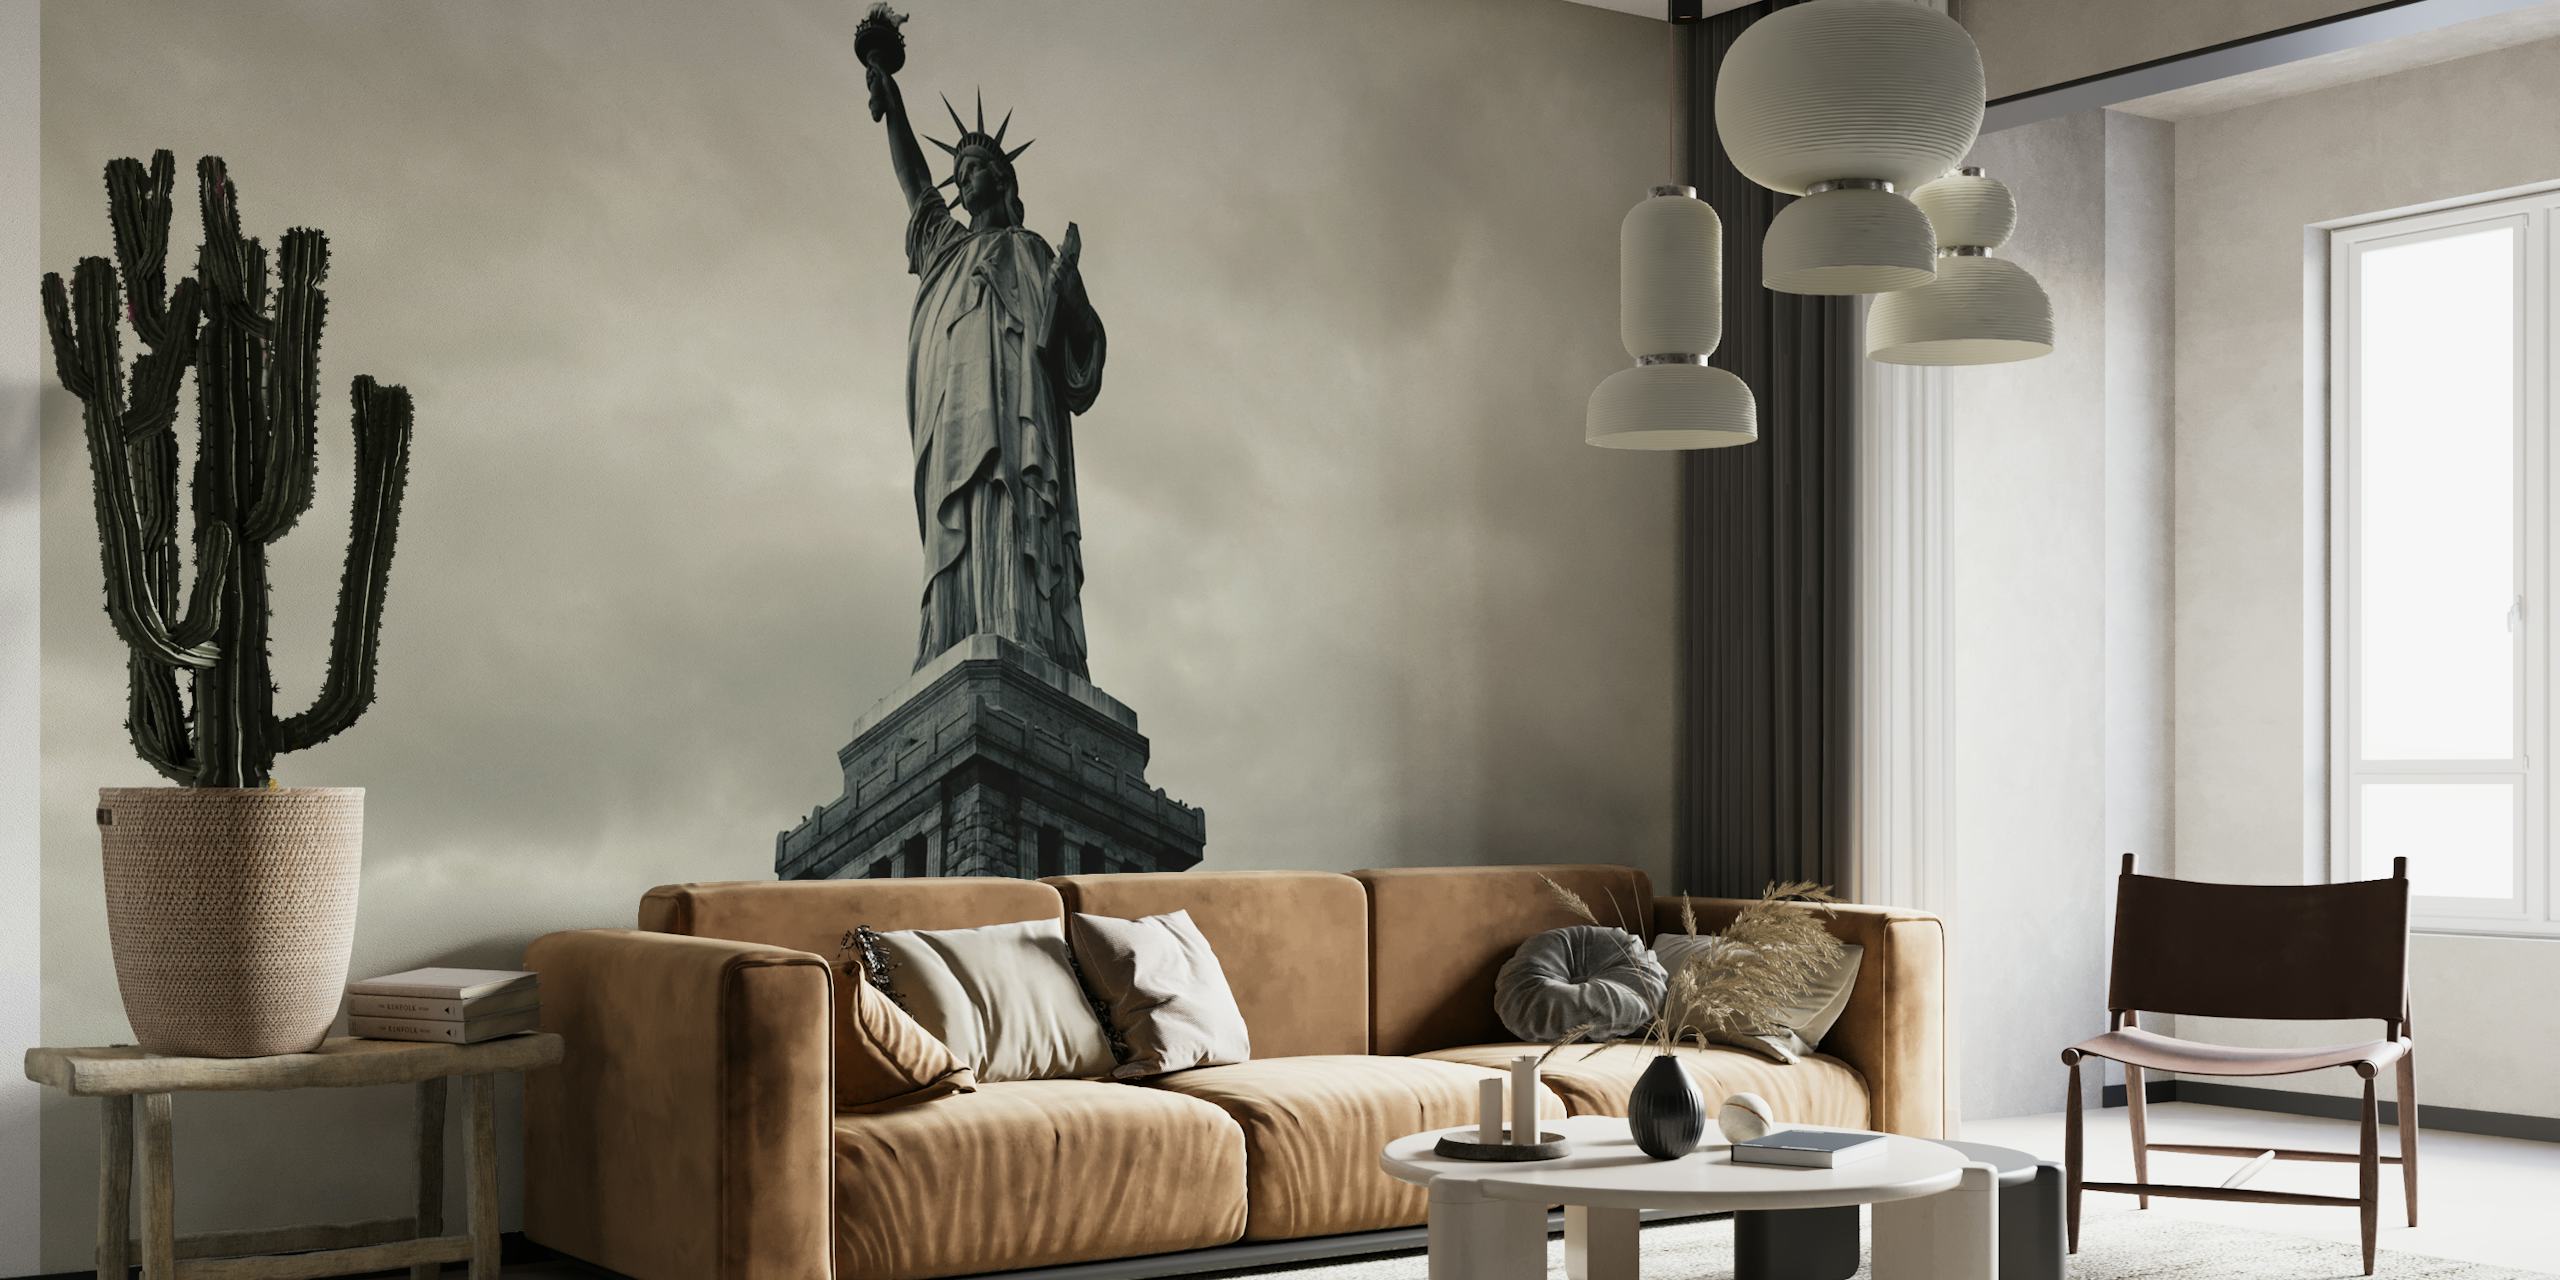 Schwarz-weißes Wandgemälde einer ikonischen amerikanischen Statue, die Freiheit und Patriotismus symbolisiert